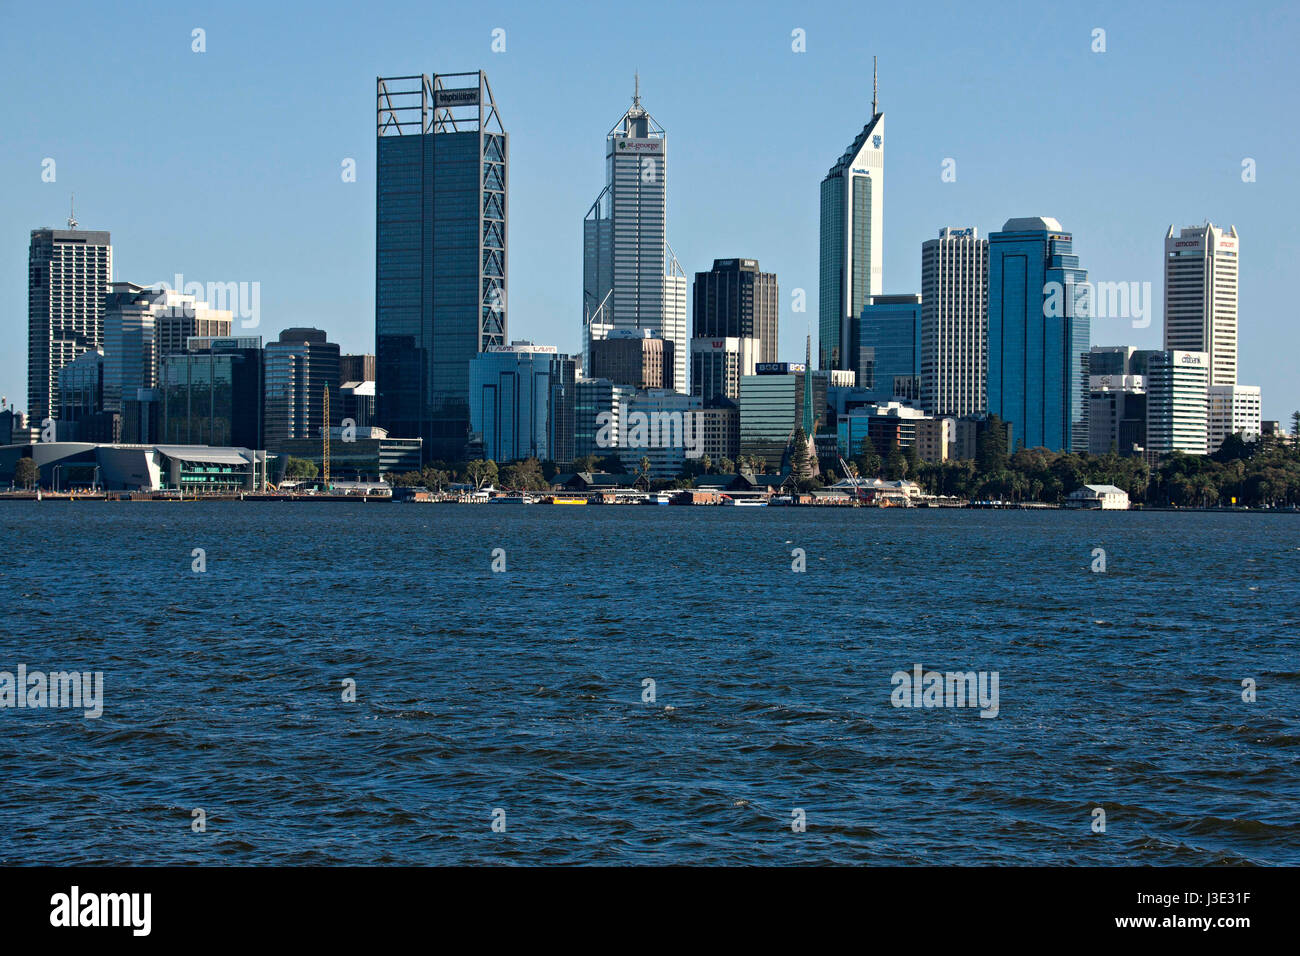 Perth City architecture, Western Australia Stock Photo